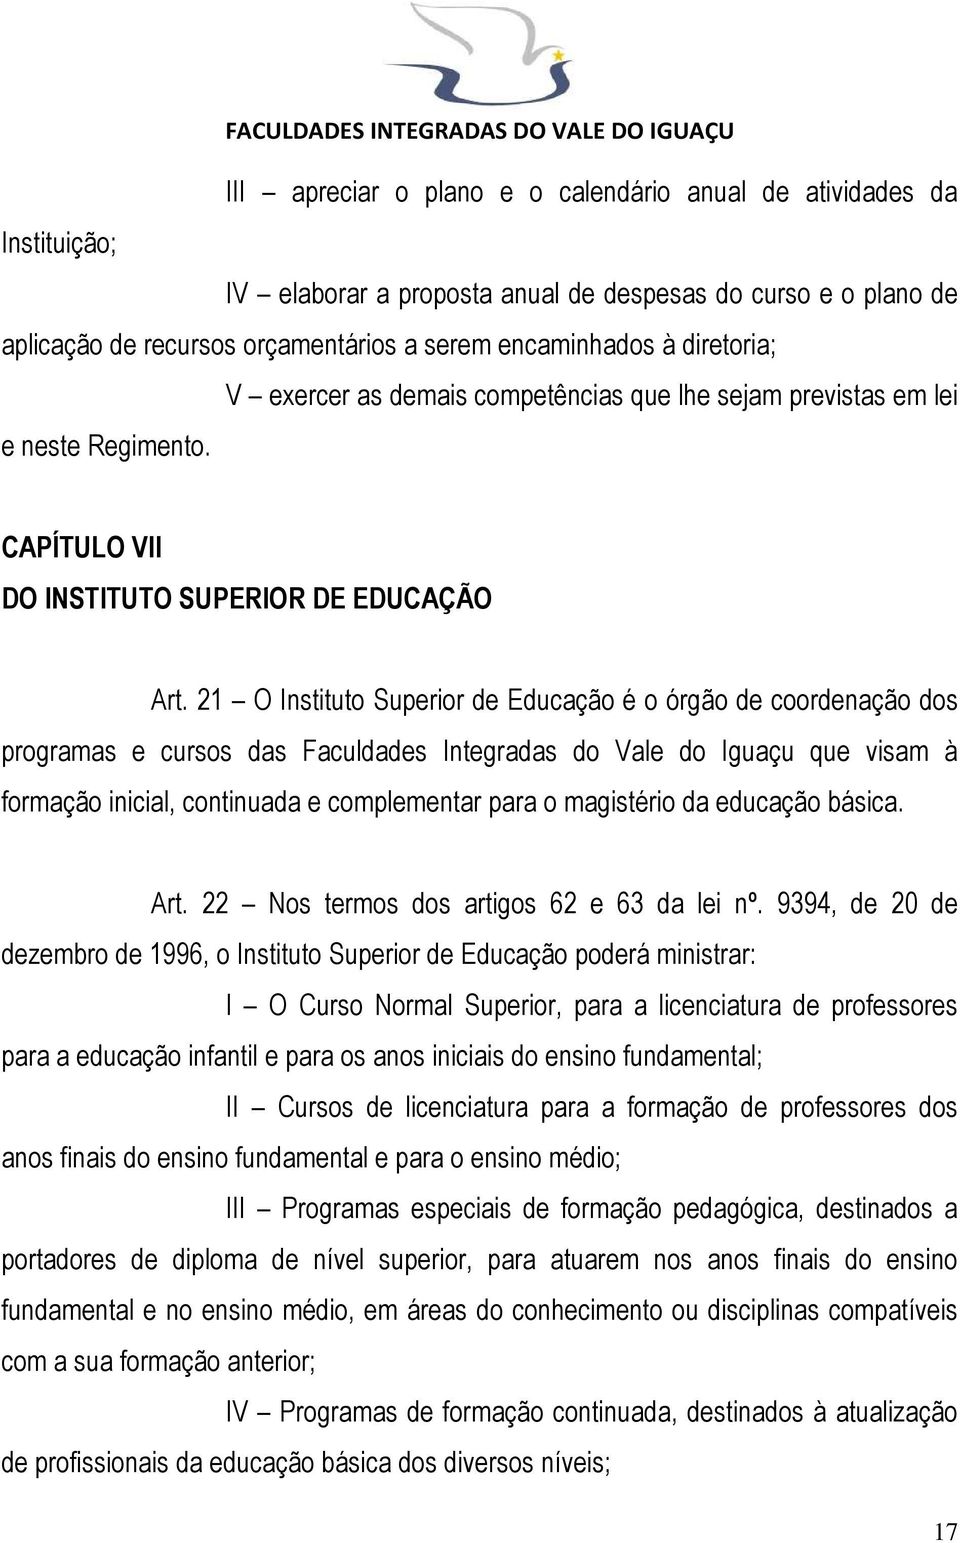 21 O Instituto Superior de Educação é o órgão de coordenação dos programas e cursos das Faculdades Integradas do Vale do Iguaçu que visam à formação inicial, continuada e complementar para o